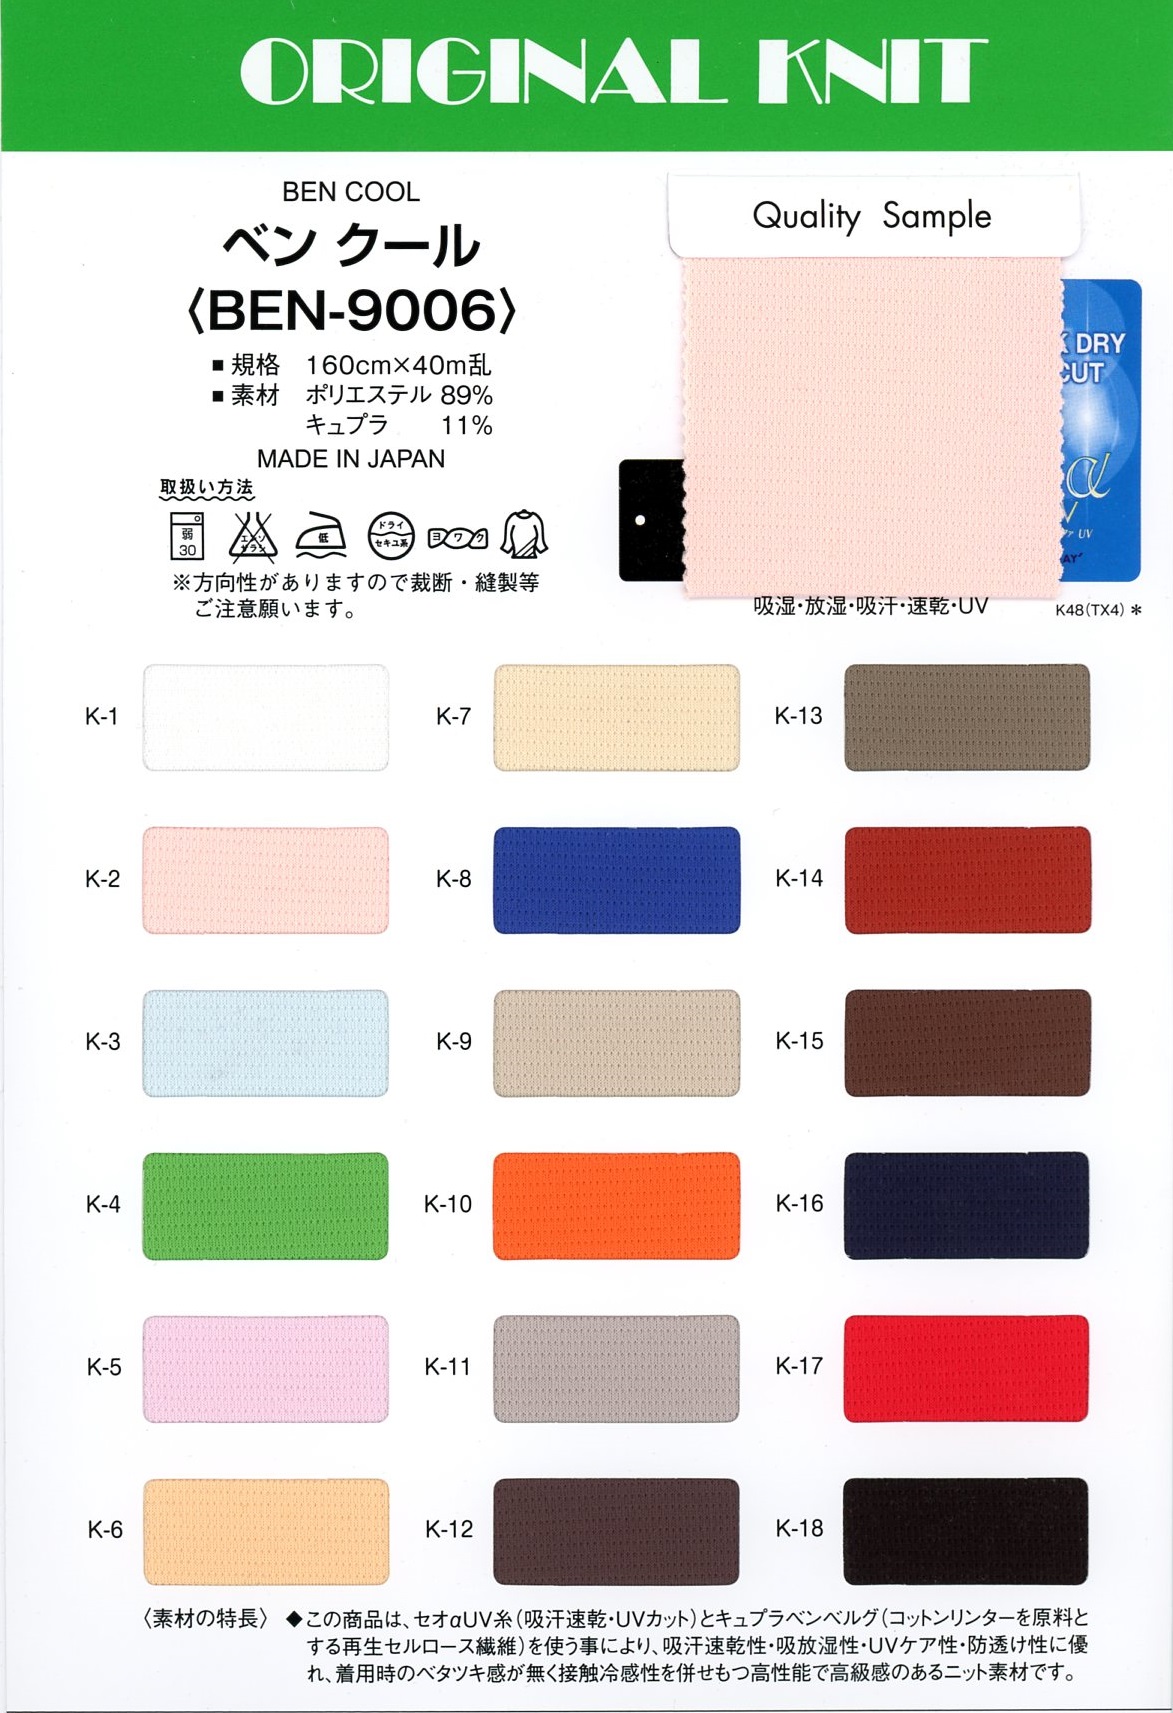 BEN-9006 Ben Cool[Fabrication De Textile] Masuda